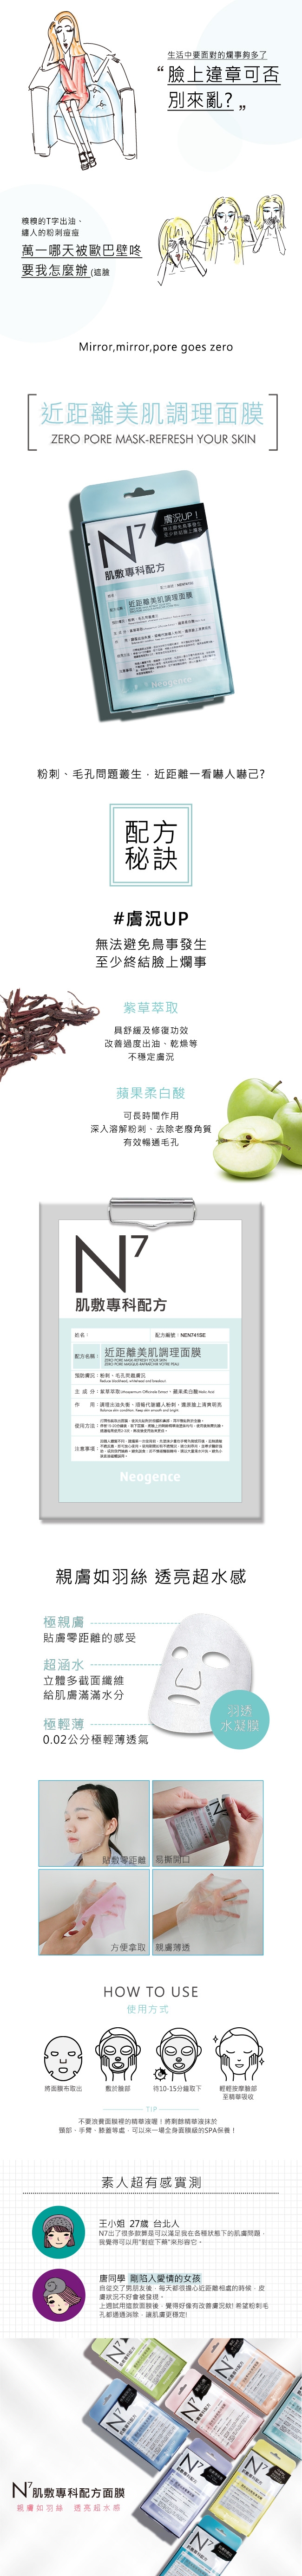 Neogence霓淨思 N7淨白保濕美肌調理面膜重裝組(共44片)